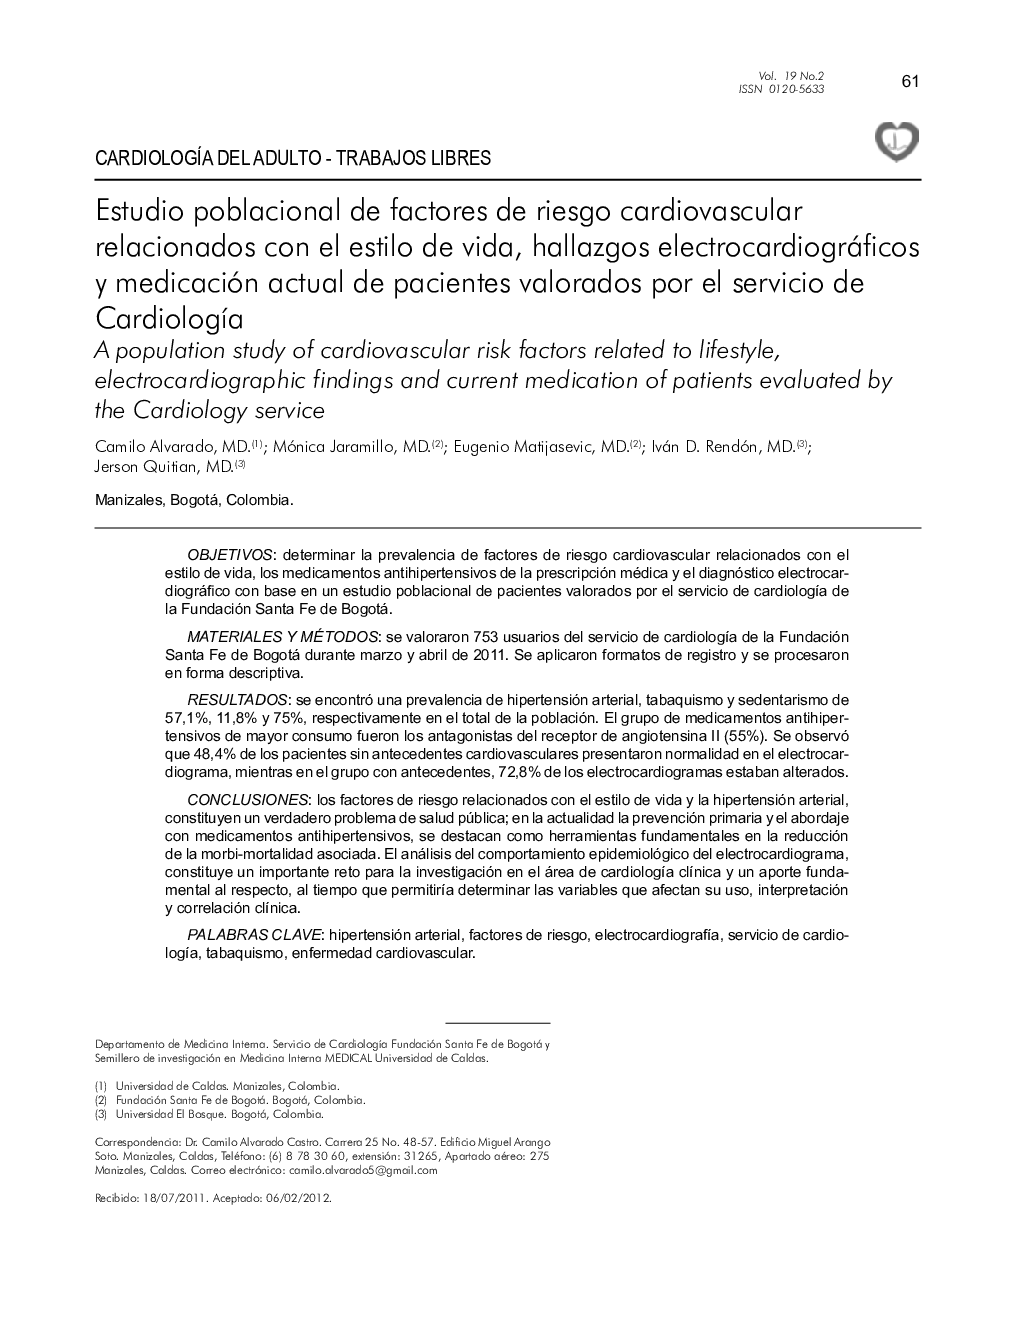 Estudio poblacional de factores de riesgo cardiovascular relacionados con el estilo de vida, hallazgos electrocardiográficos y medicación actual de pacientes valorados por el servicio de Cardiología